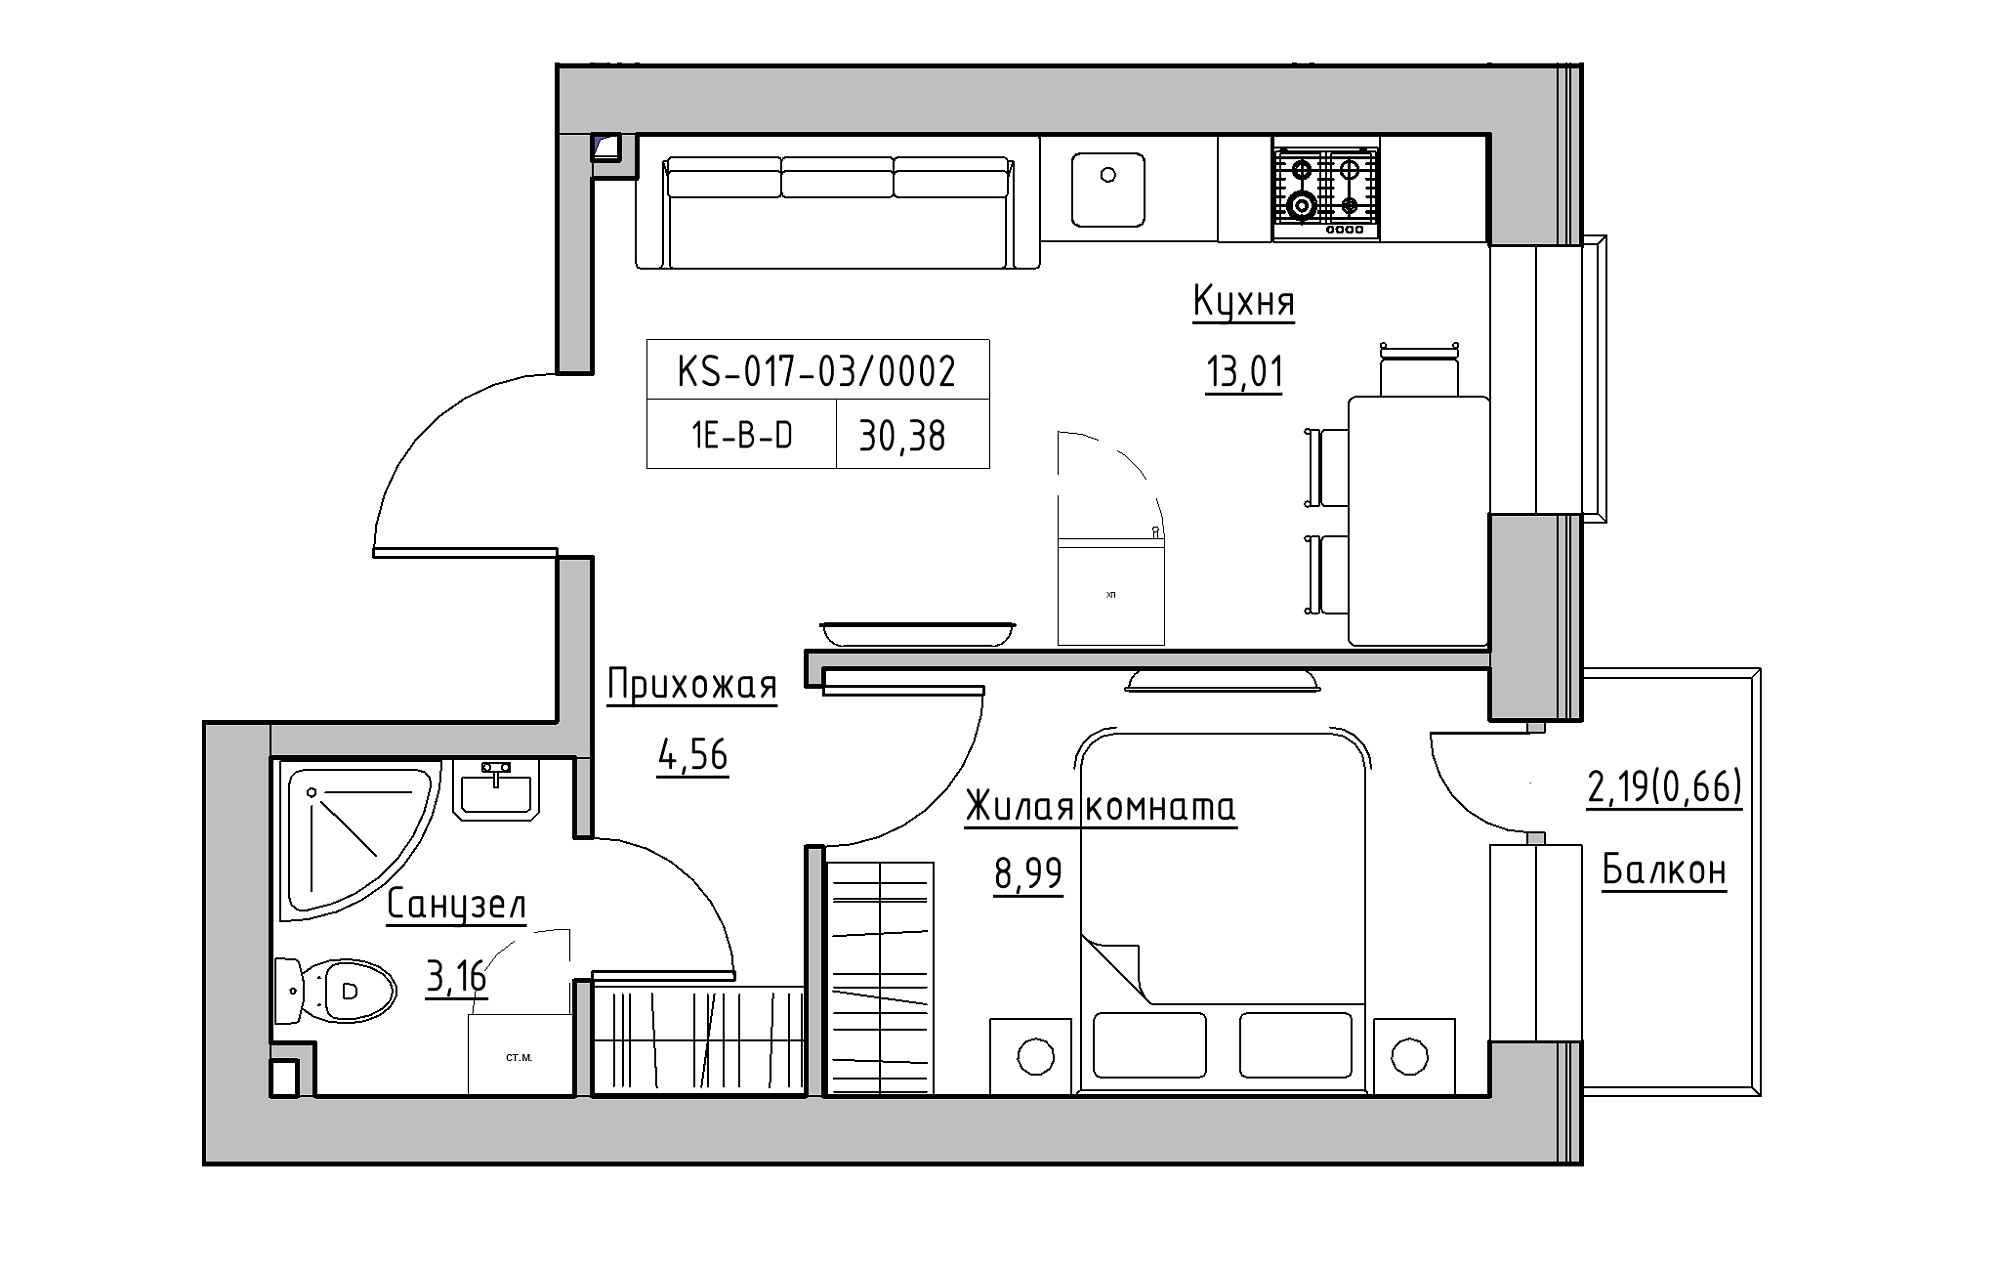 Планування 1-к квартира площею 30.38м2, KS-017-03/0002.